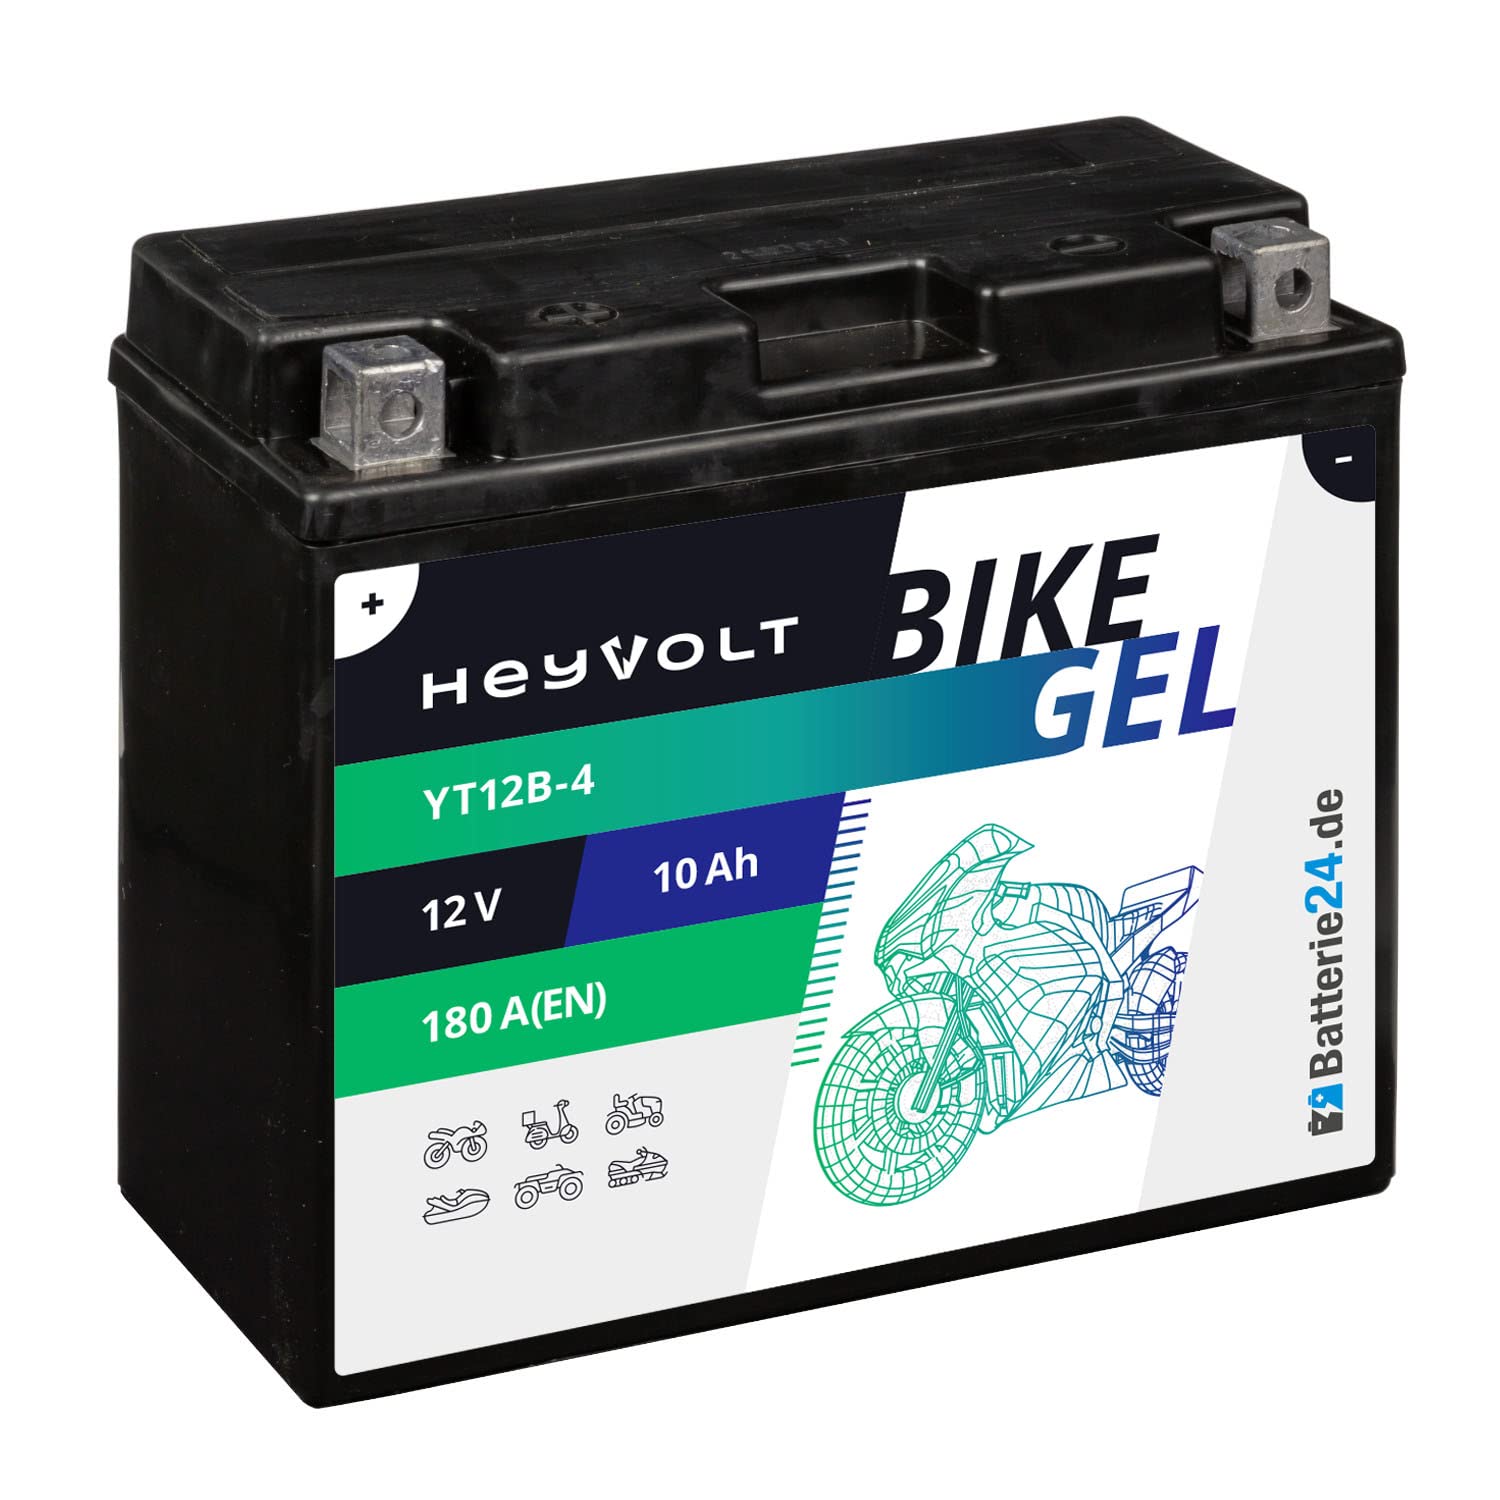 HeyVolt GEL Motorradbatterie 12V 10Ah YT12B-4 CT12B-4 GT12B-4 FT12B-4 A-D 51015 YT12B-BS von Batterie24.de